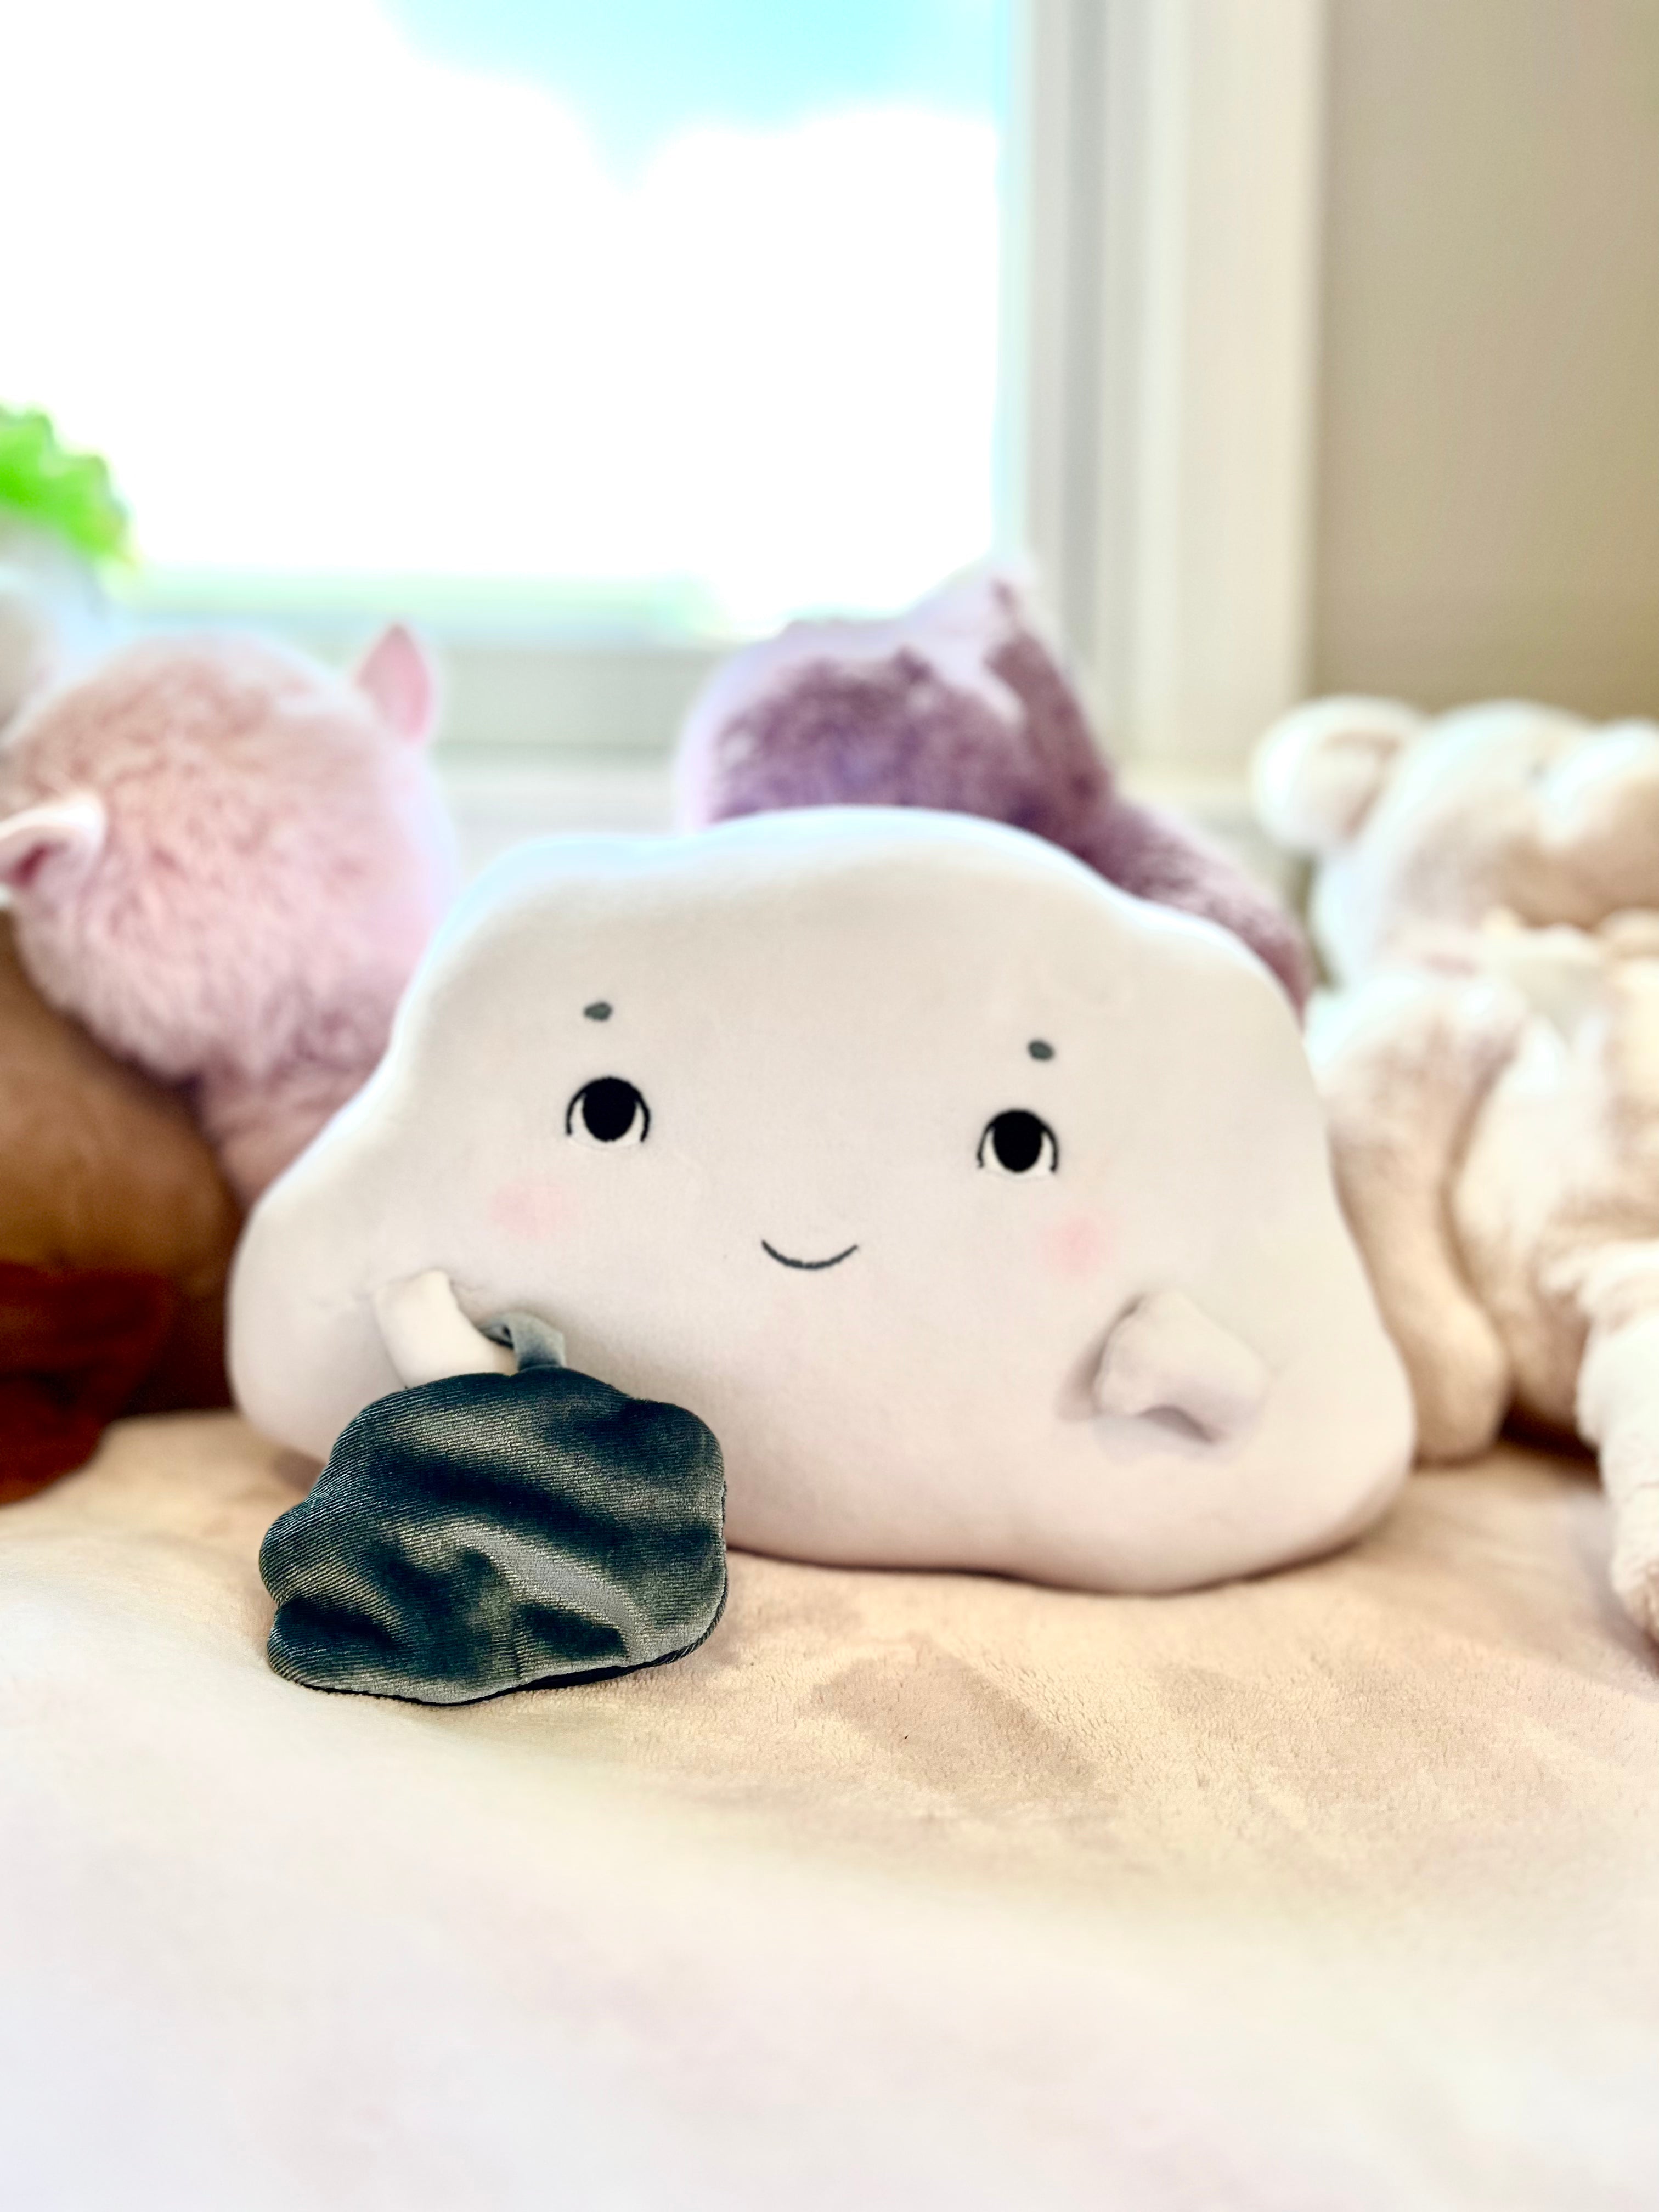 Worry Cloud Plush Toy – Mindful Minis Publishing